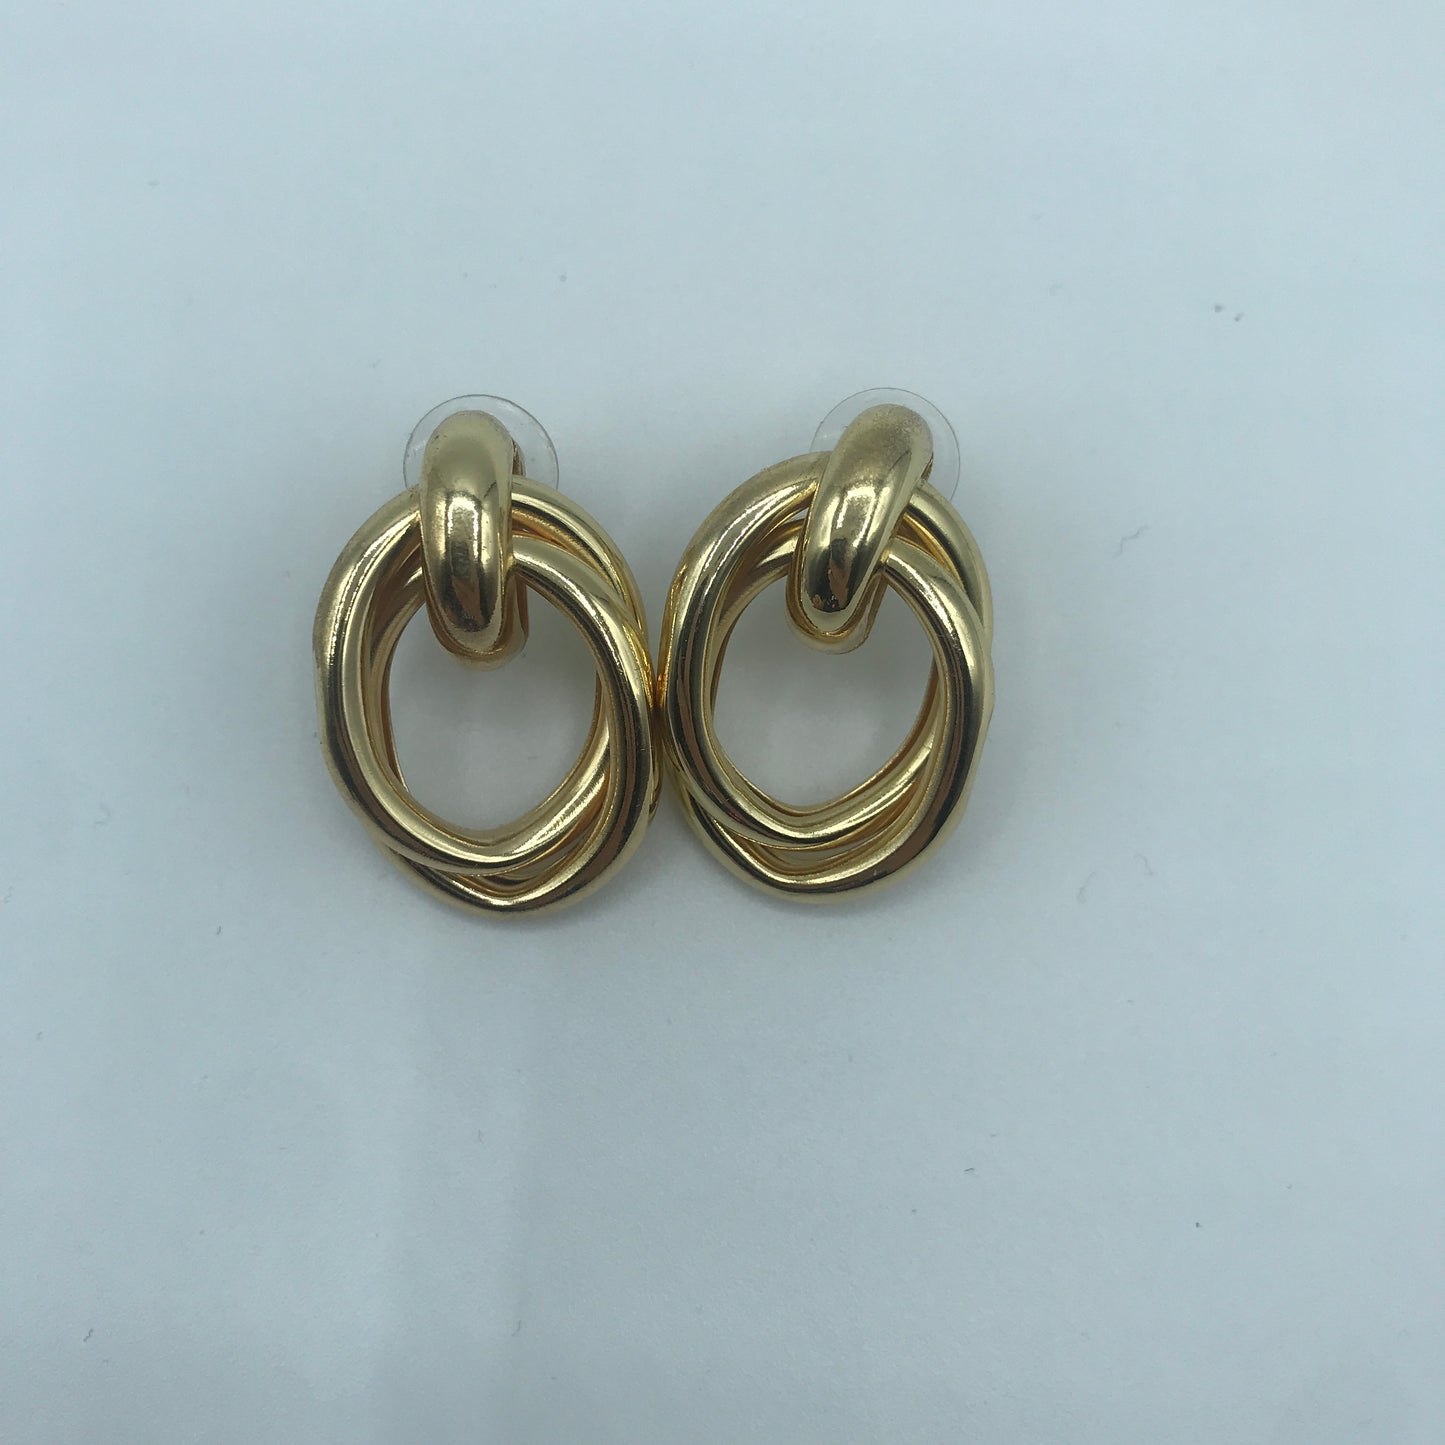 Crossed oval hoop earrings